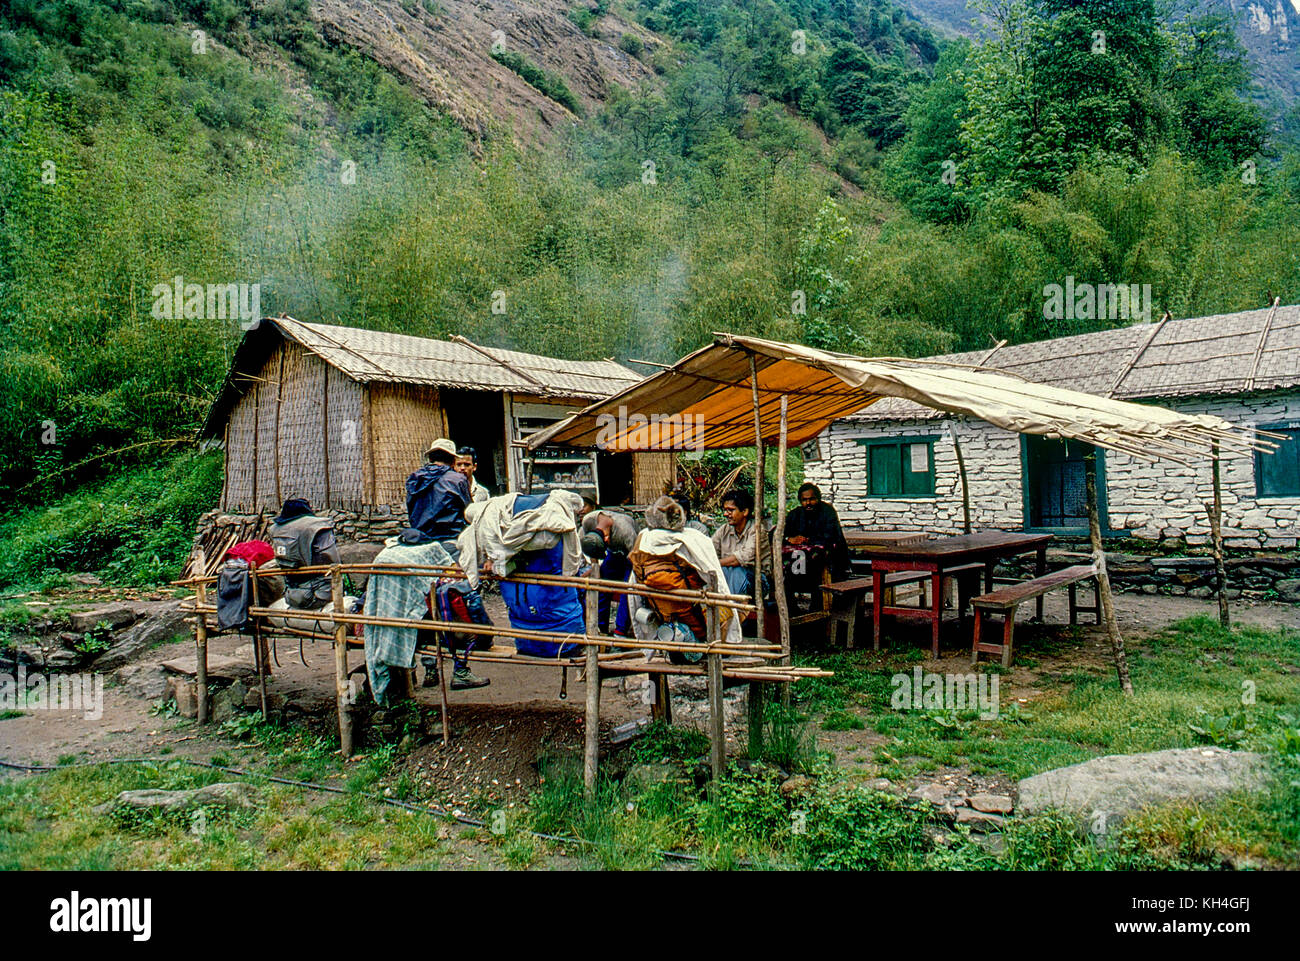 La gente descansando en el hotel, camino toannapurna campamento base ruta, Nepal, Asia Foto de stock